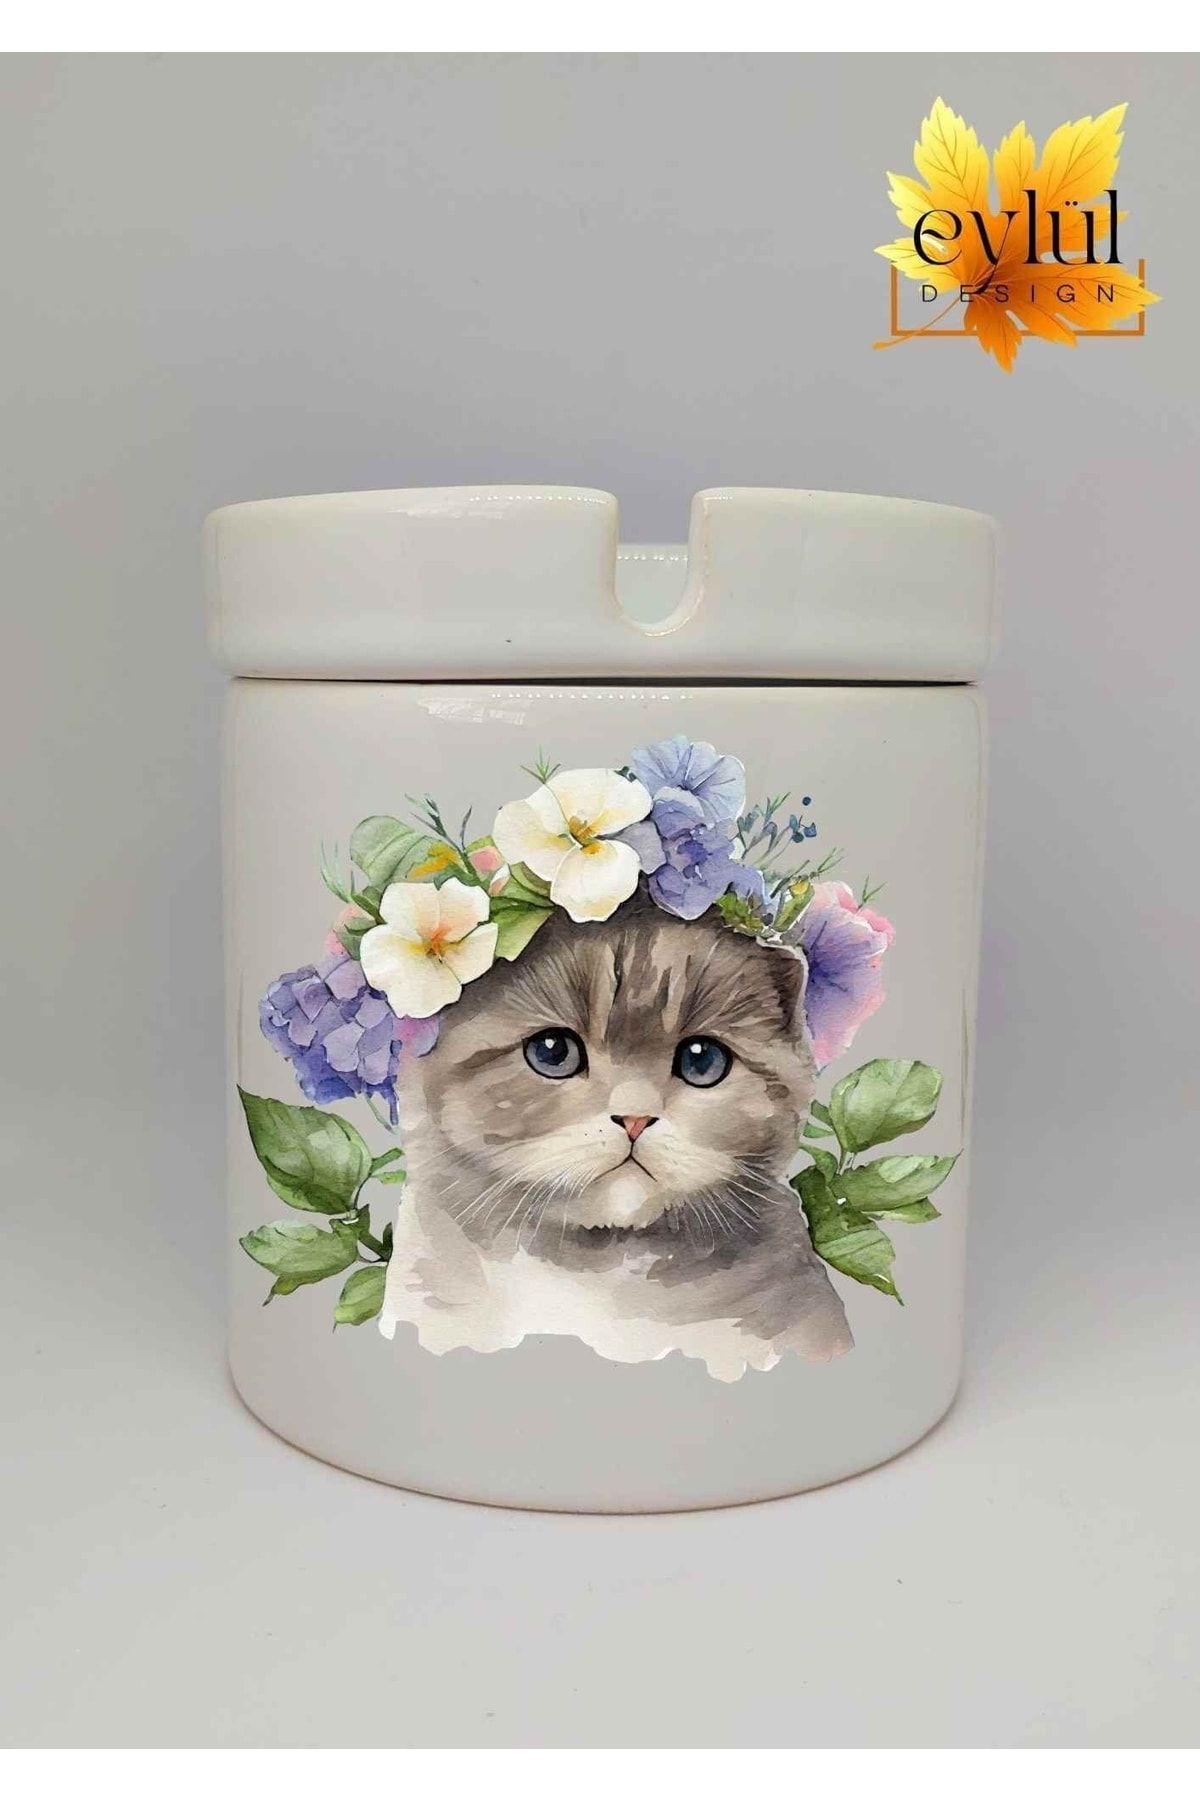 Eylül Design Çiçekli Kedi Baskılı Özel Tasarım Baskılı Seramik Küllük Kokusuz Kültablası-3